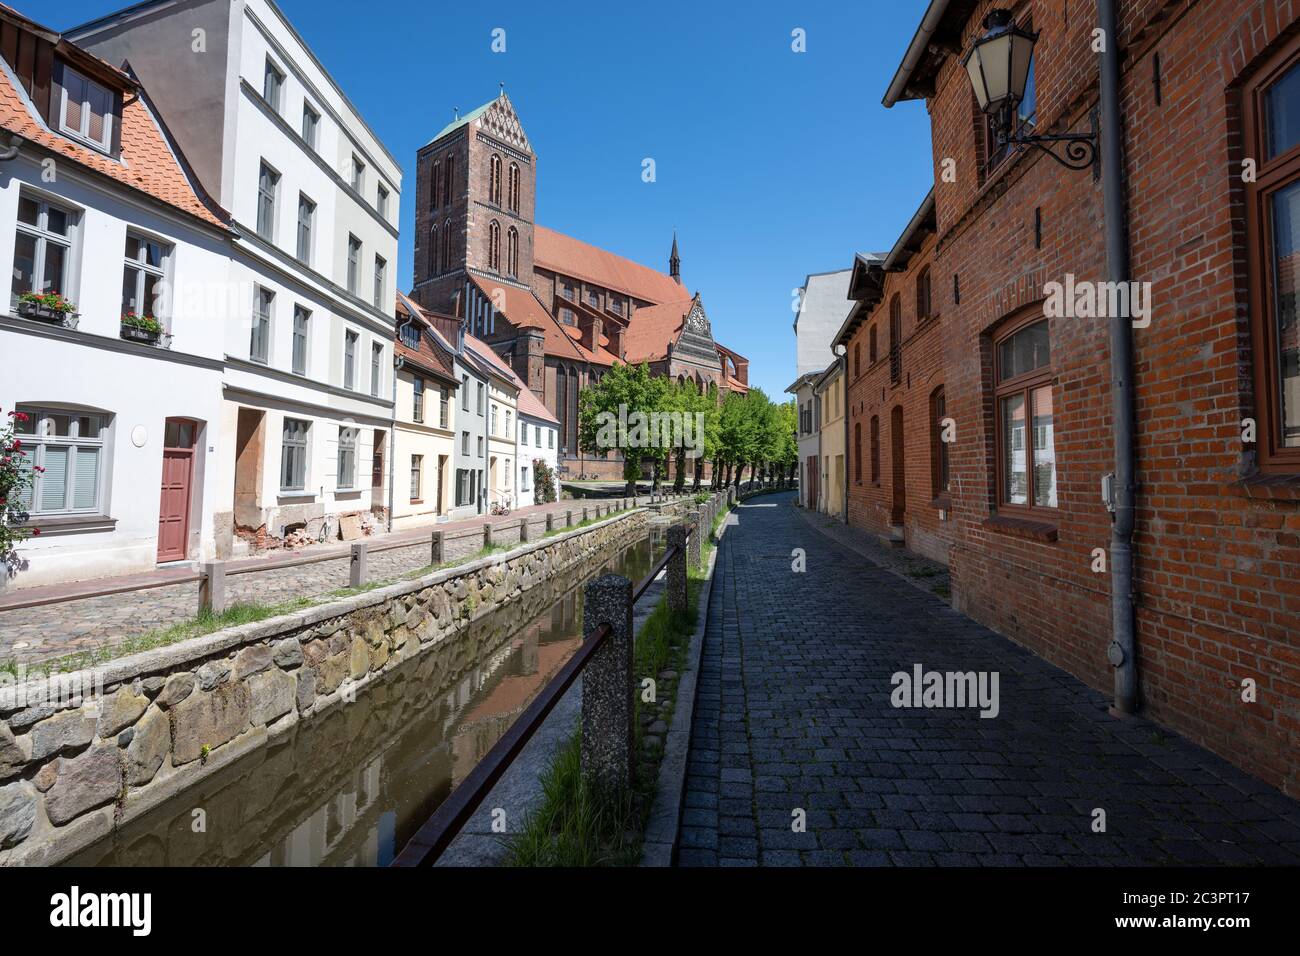 Chiesa di San Nicola (Nikolaikirche) e canale nel centro storico di Wismar contro un cielo blu, la città anseatica è una famosa destinazione turistica presso il Foto Stock